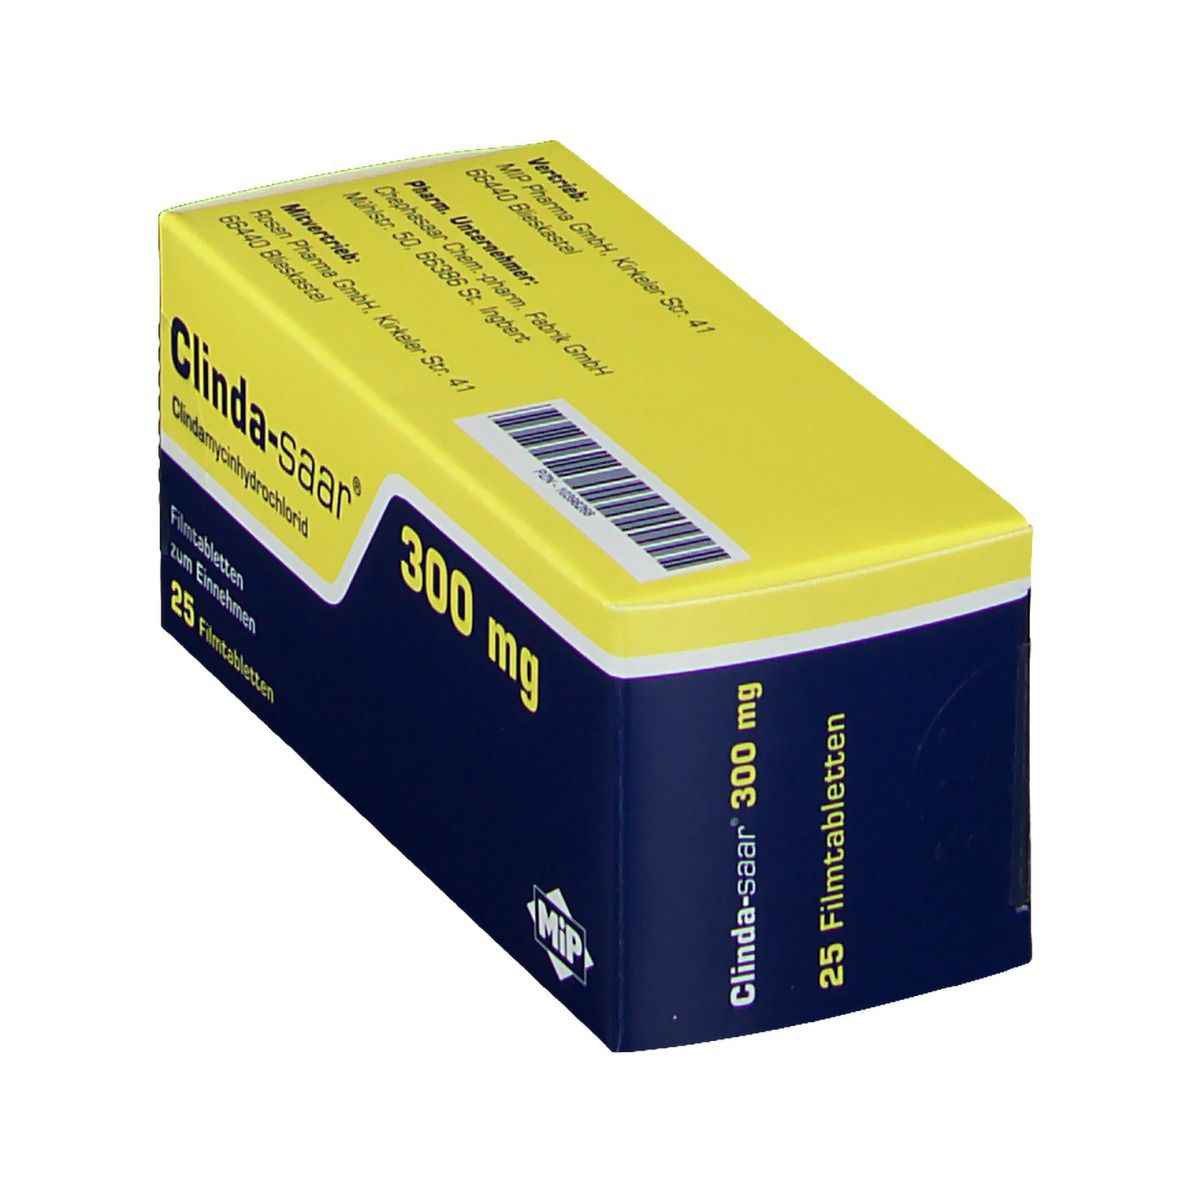 Clinda-saar® 300 mg